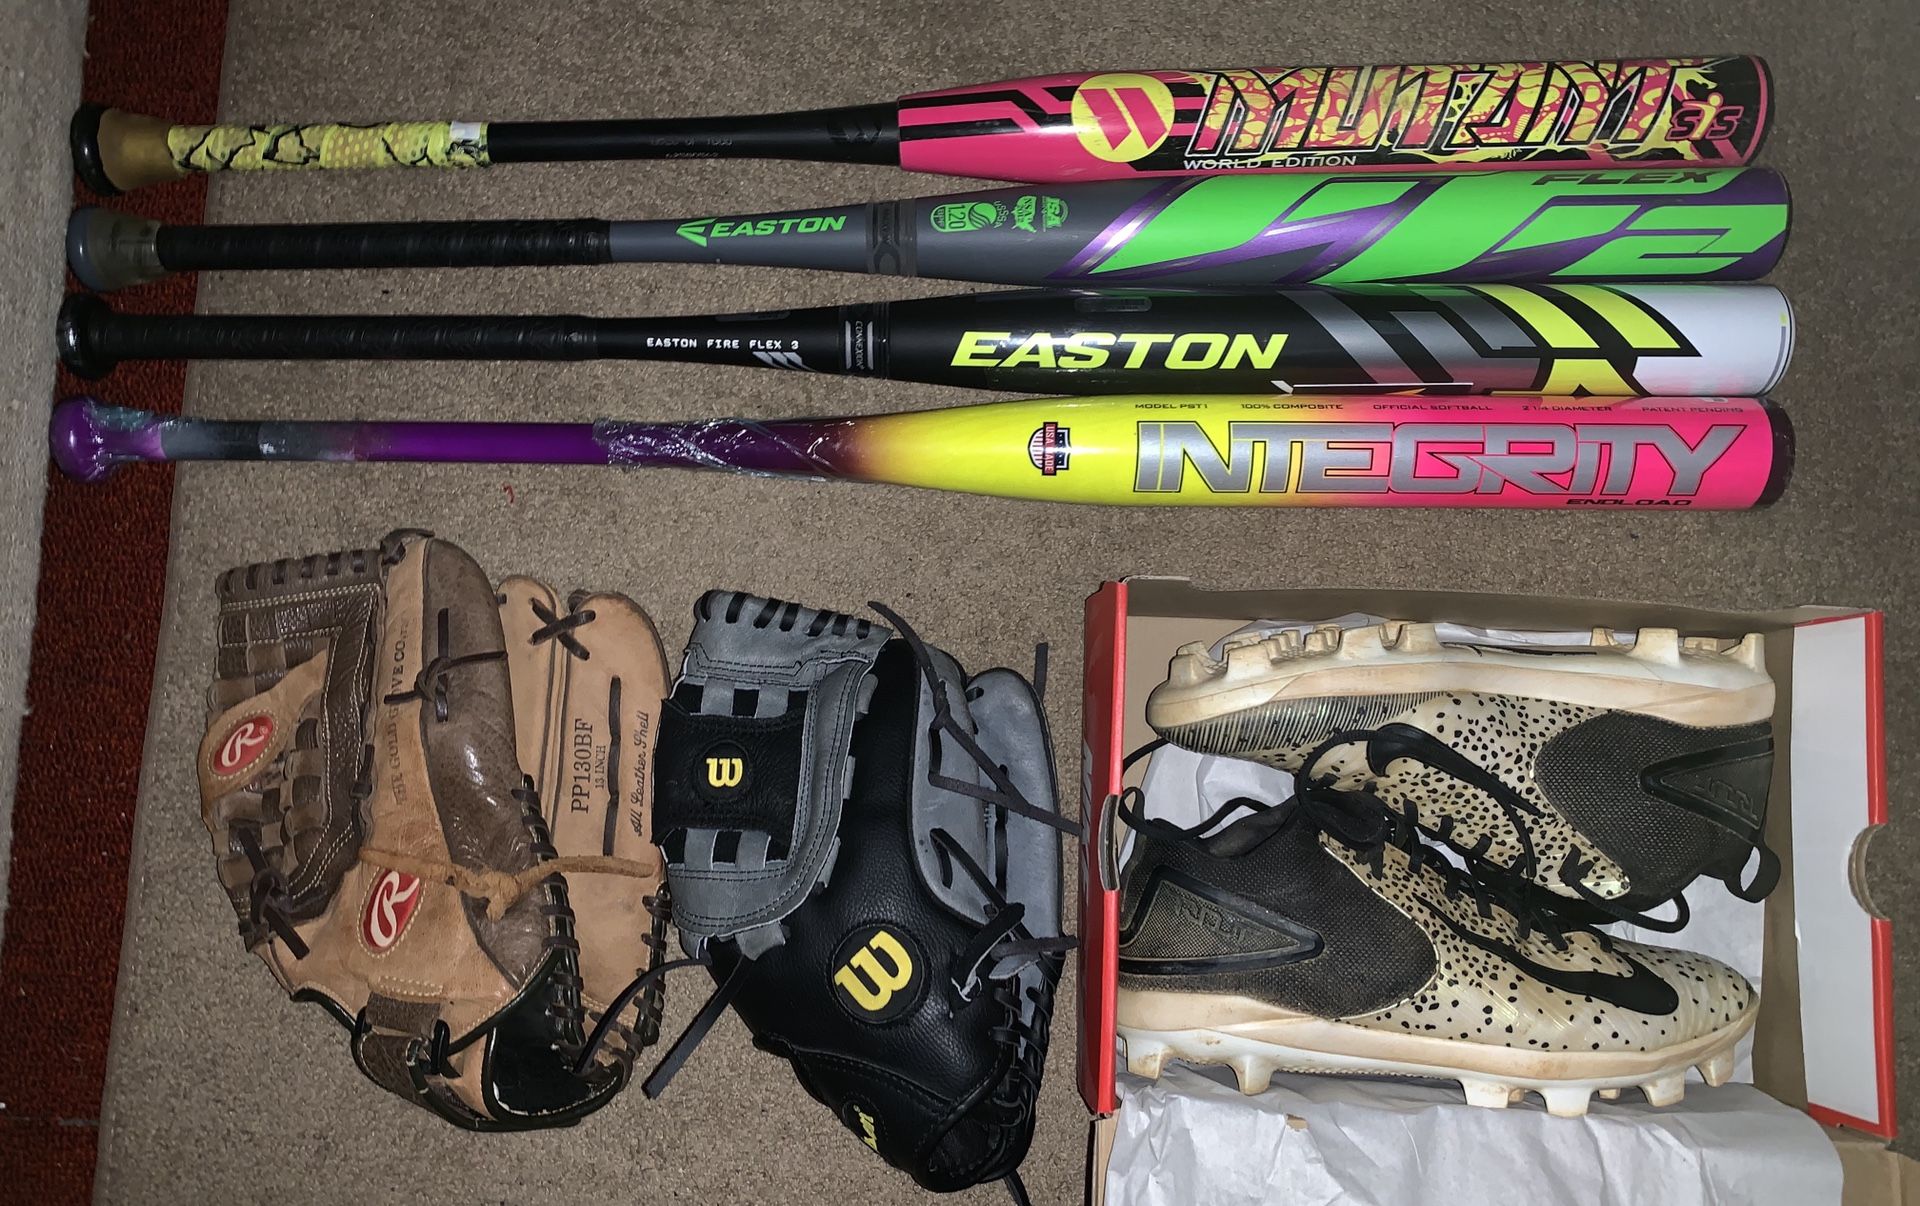 Softball bats, gloves & cleats